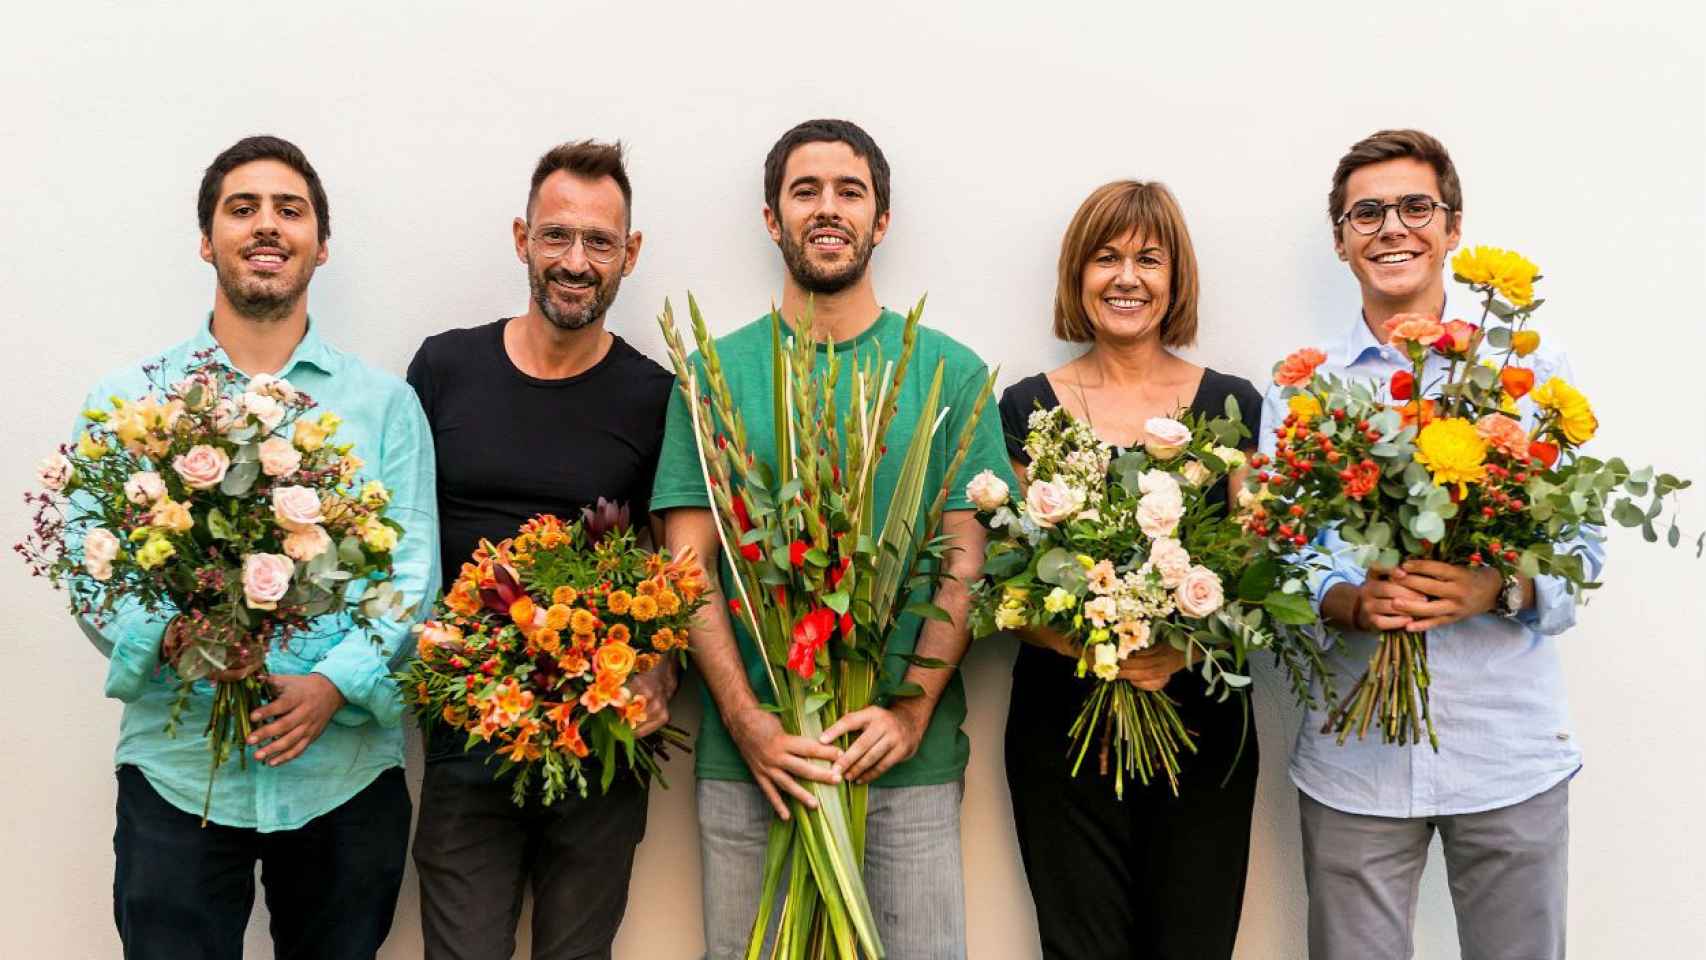 The Colvin es una plataforma de venta de flores online nacida en Barcelona que está revolucionando el mercado / The Colvin